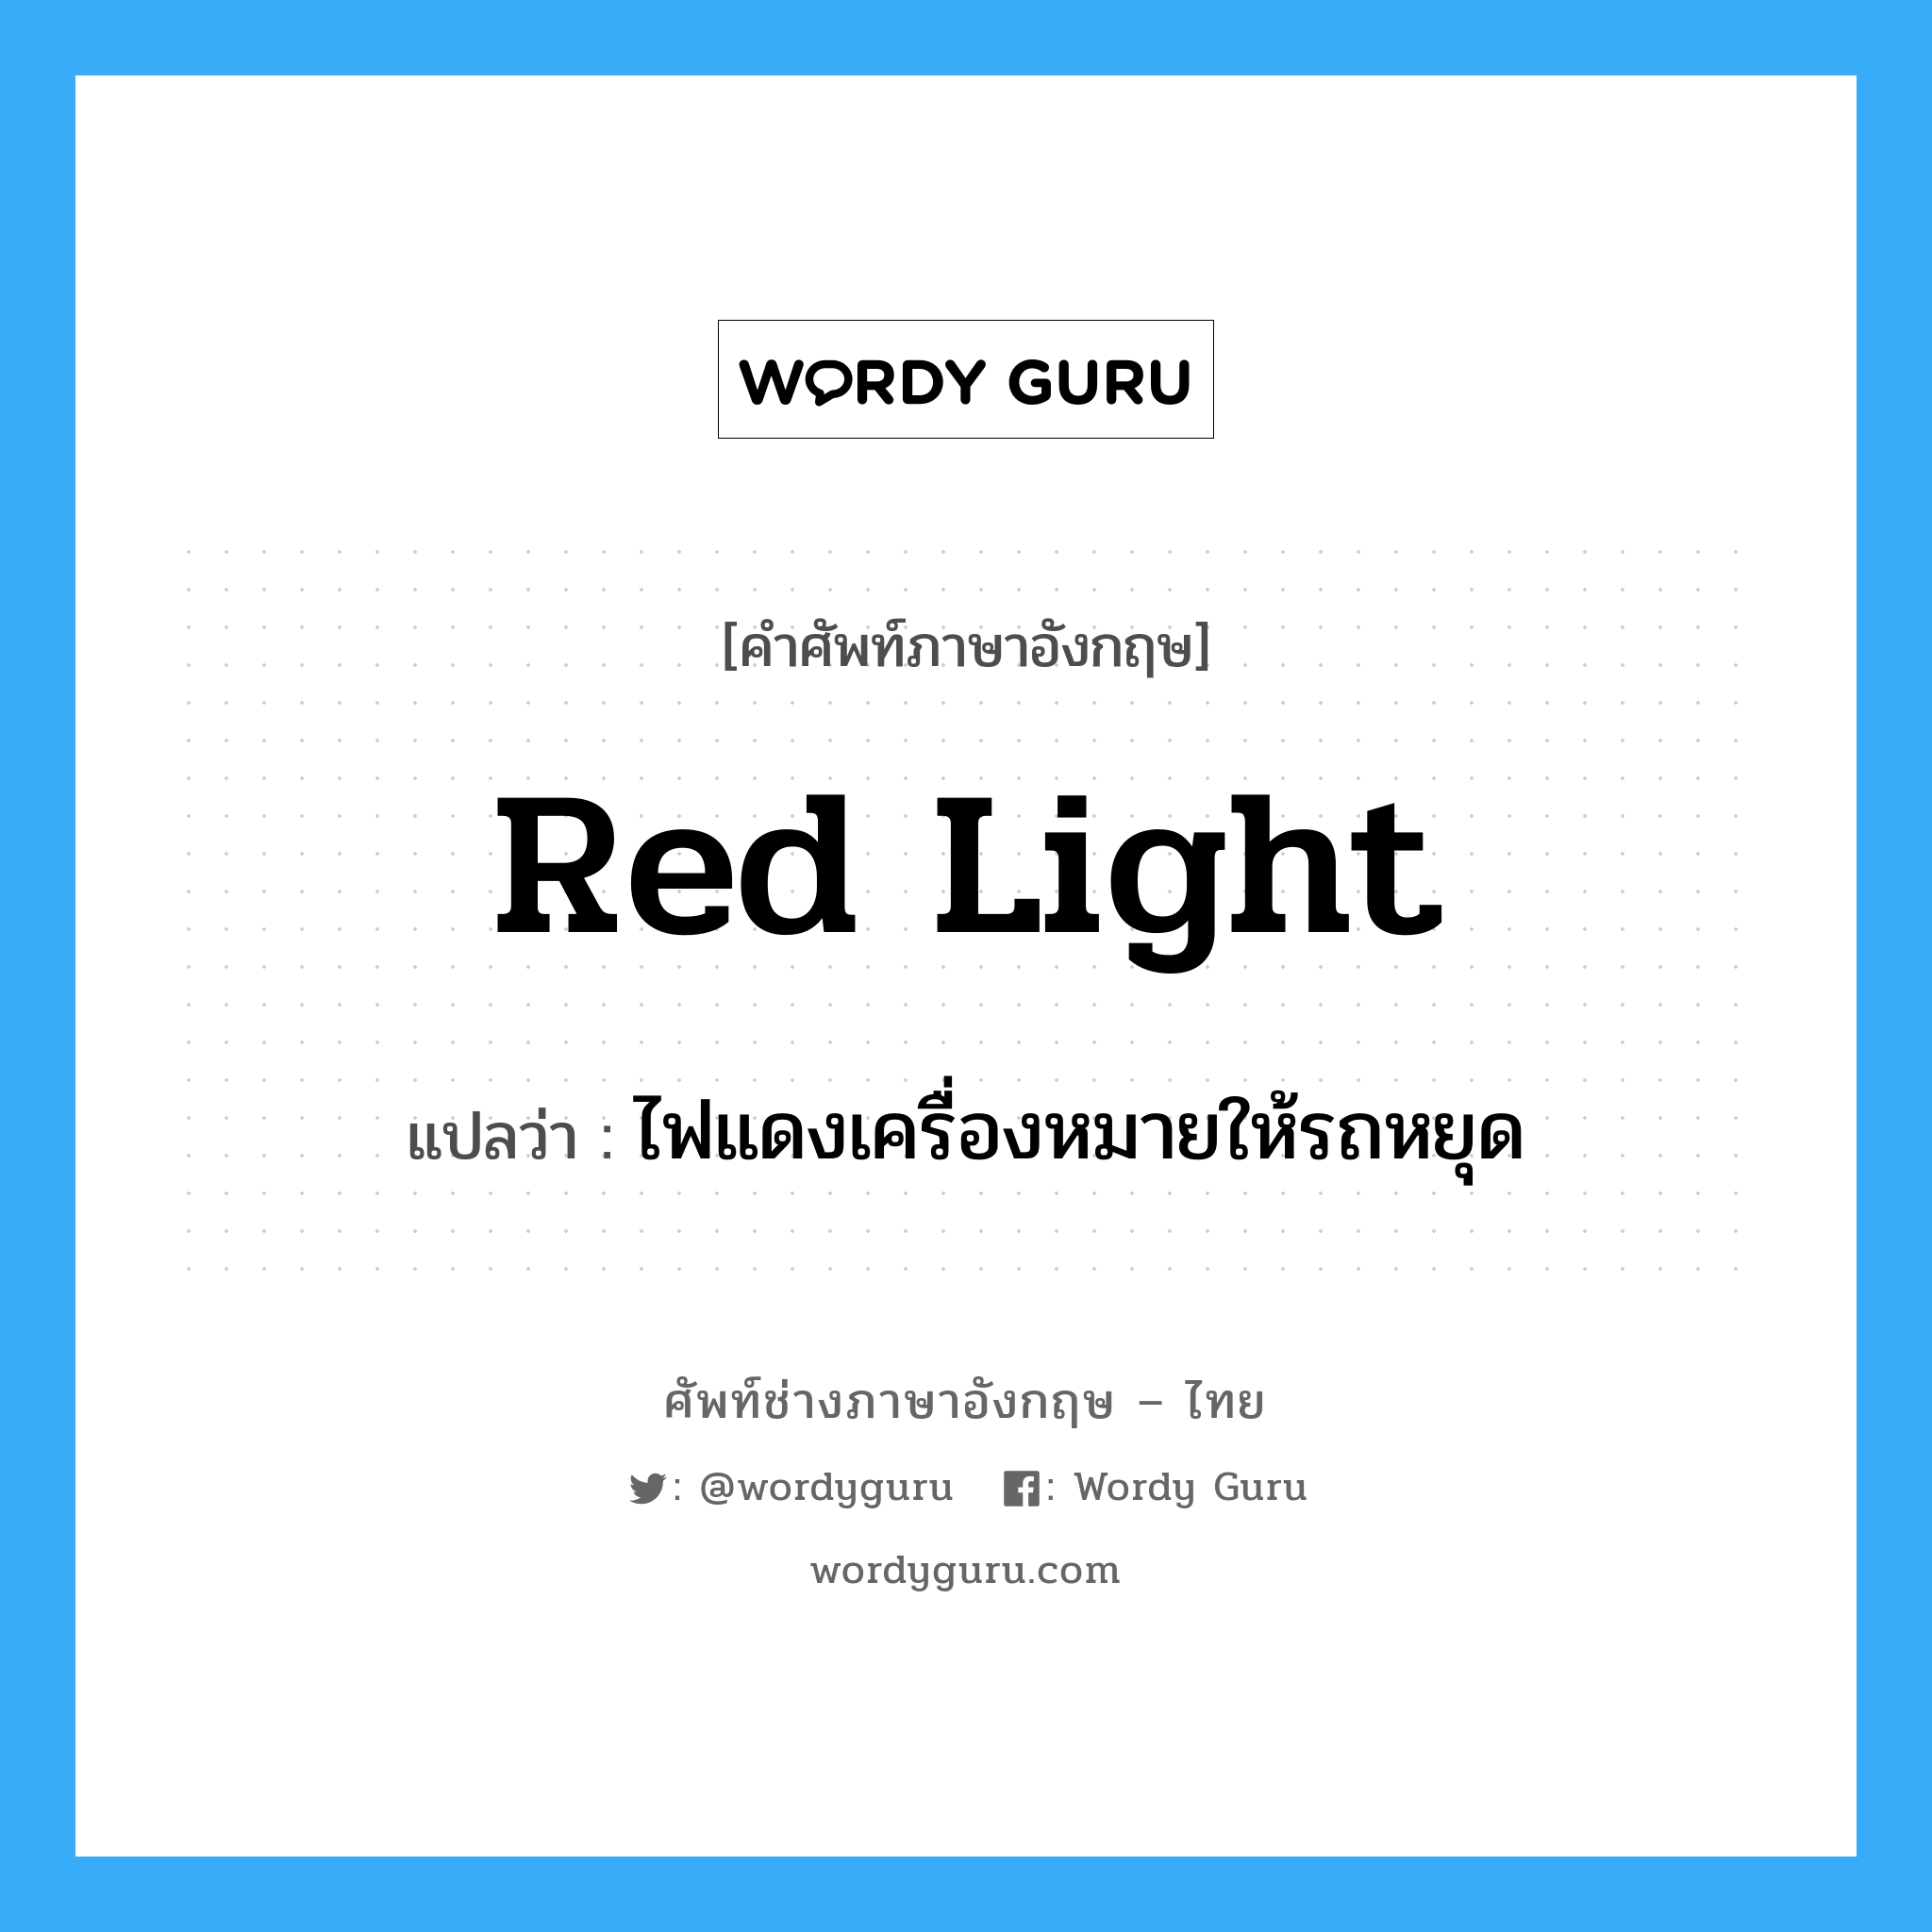 red light แปลว่า?, คำศัพท์ช่างภาษาอังกฤษ - ไทย red light คำศัพท์ภาษาอังกฤษ red light แปลว่า ไฟแดงเครื่องหมายให้รถหยุด